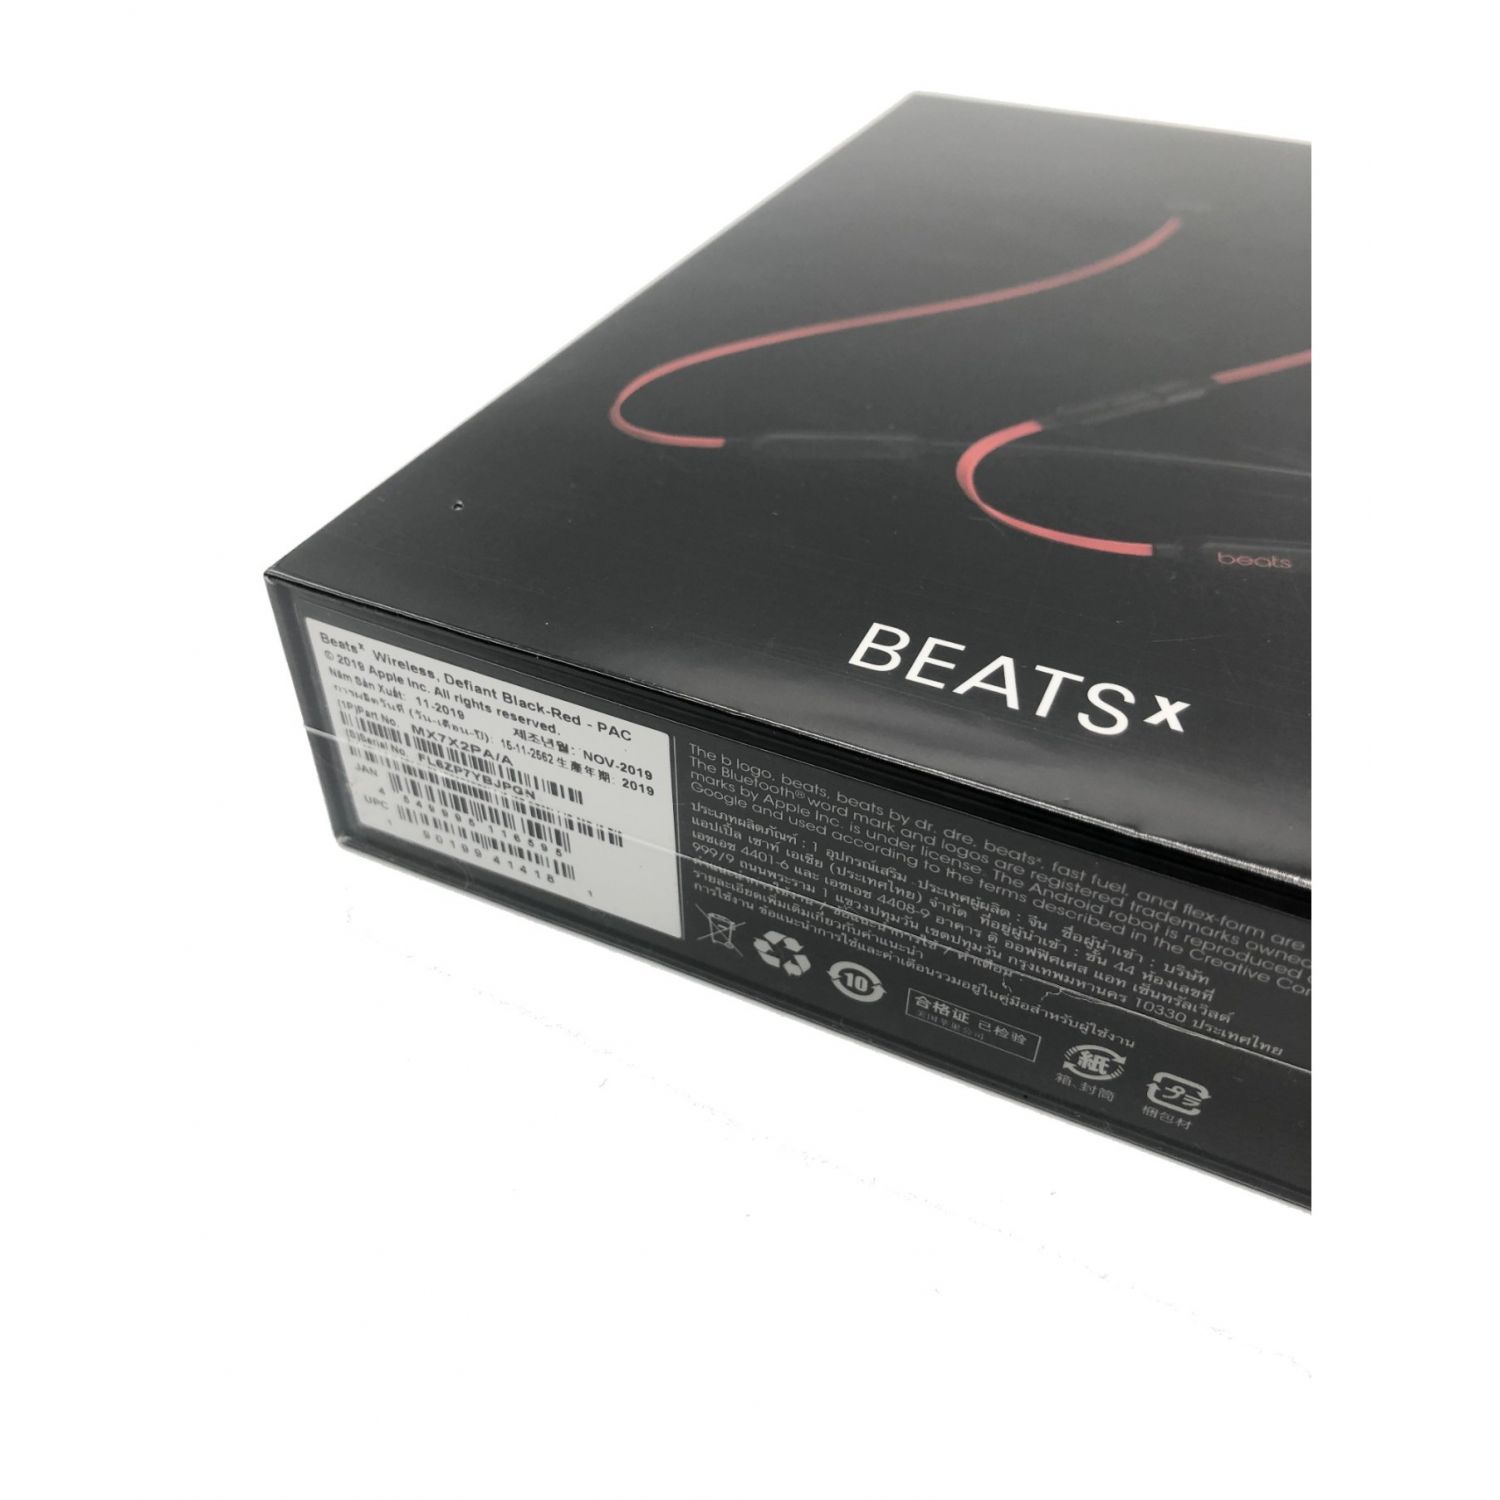 Beats by Dr.Dre (ビーツバイドクタードレ) イヤホン 未使用品 BEATSX